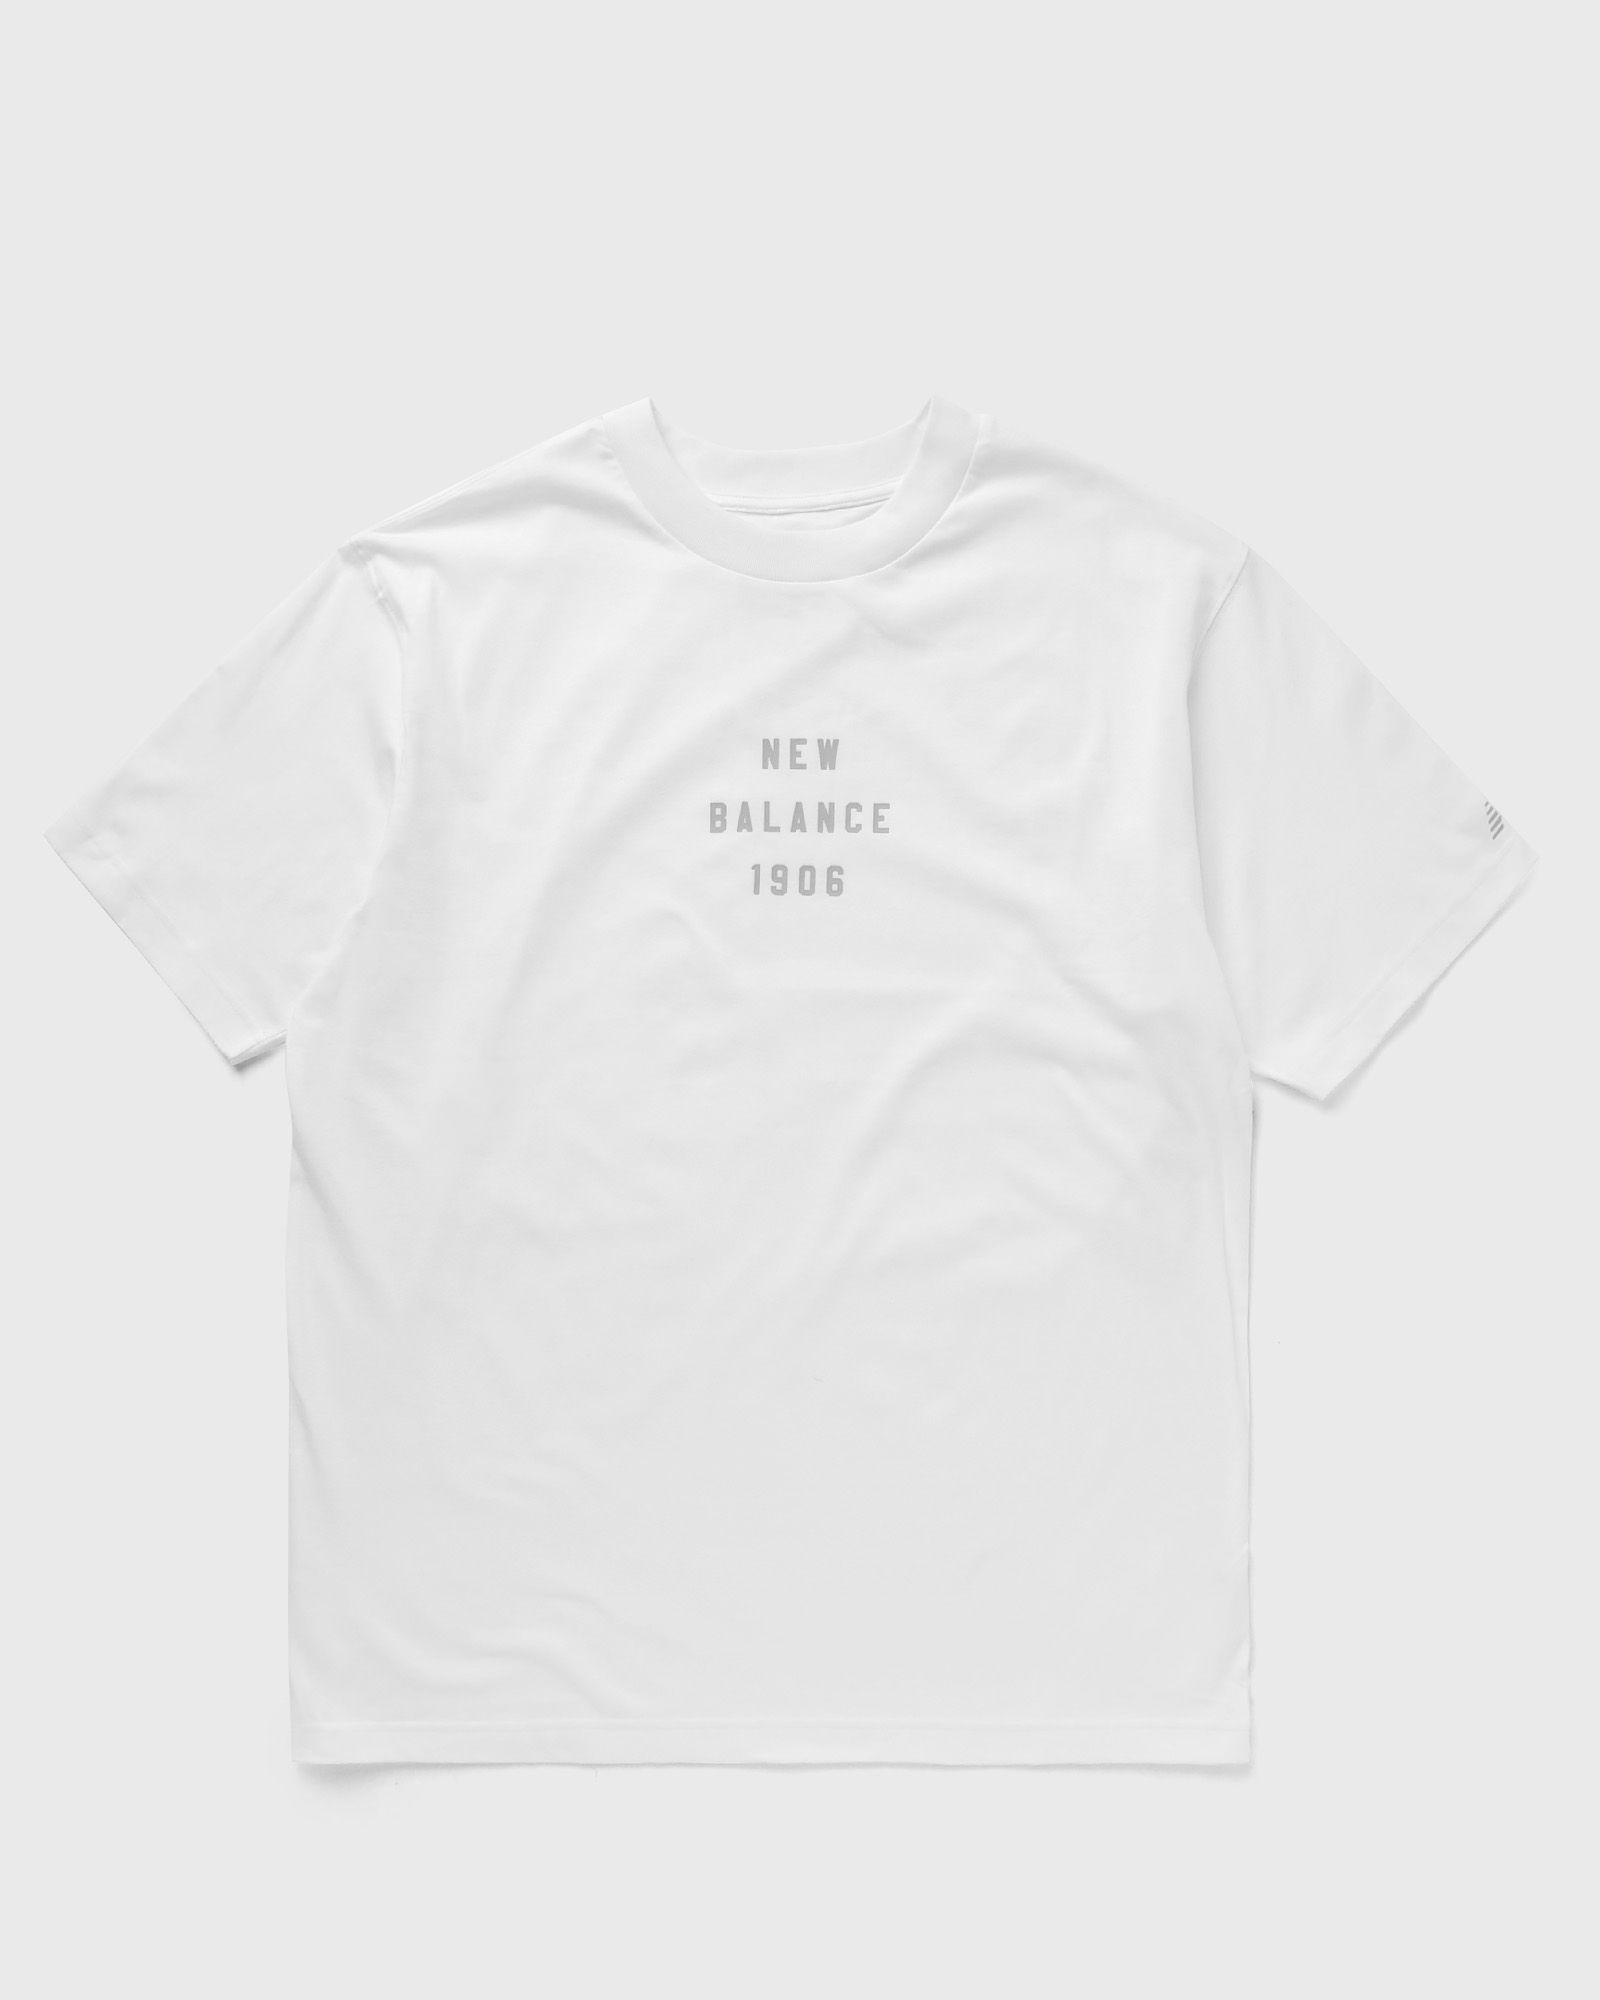 New Balance - graphic t-shirt men shortsleeves white in größe:m